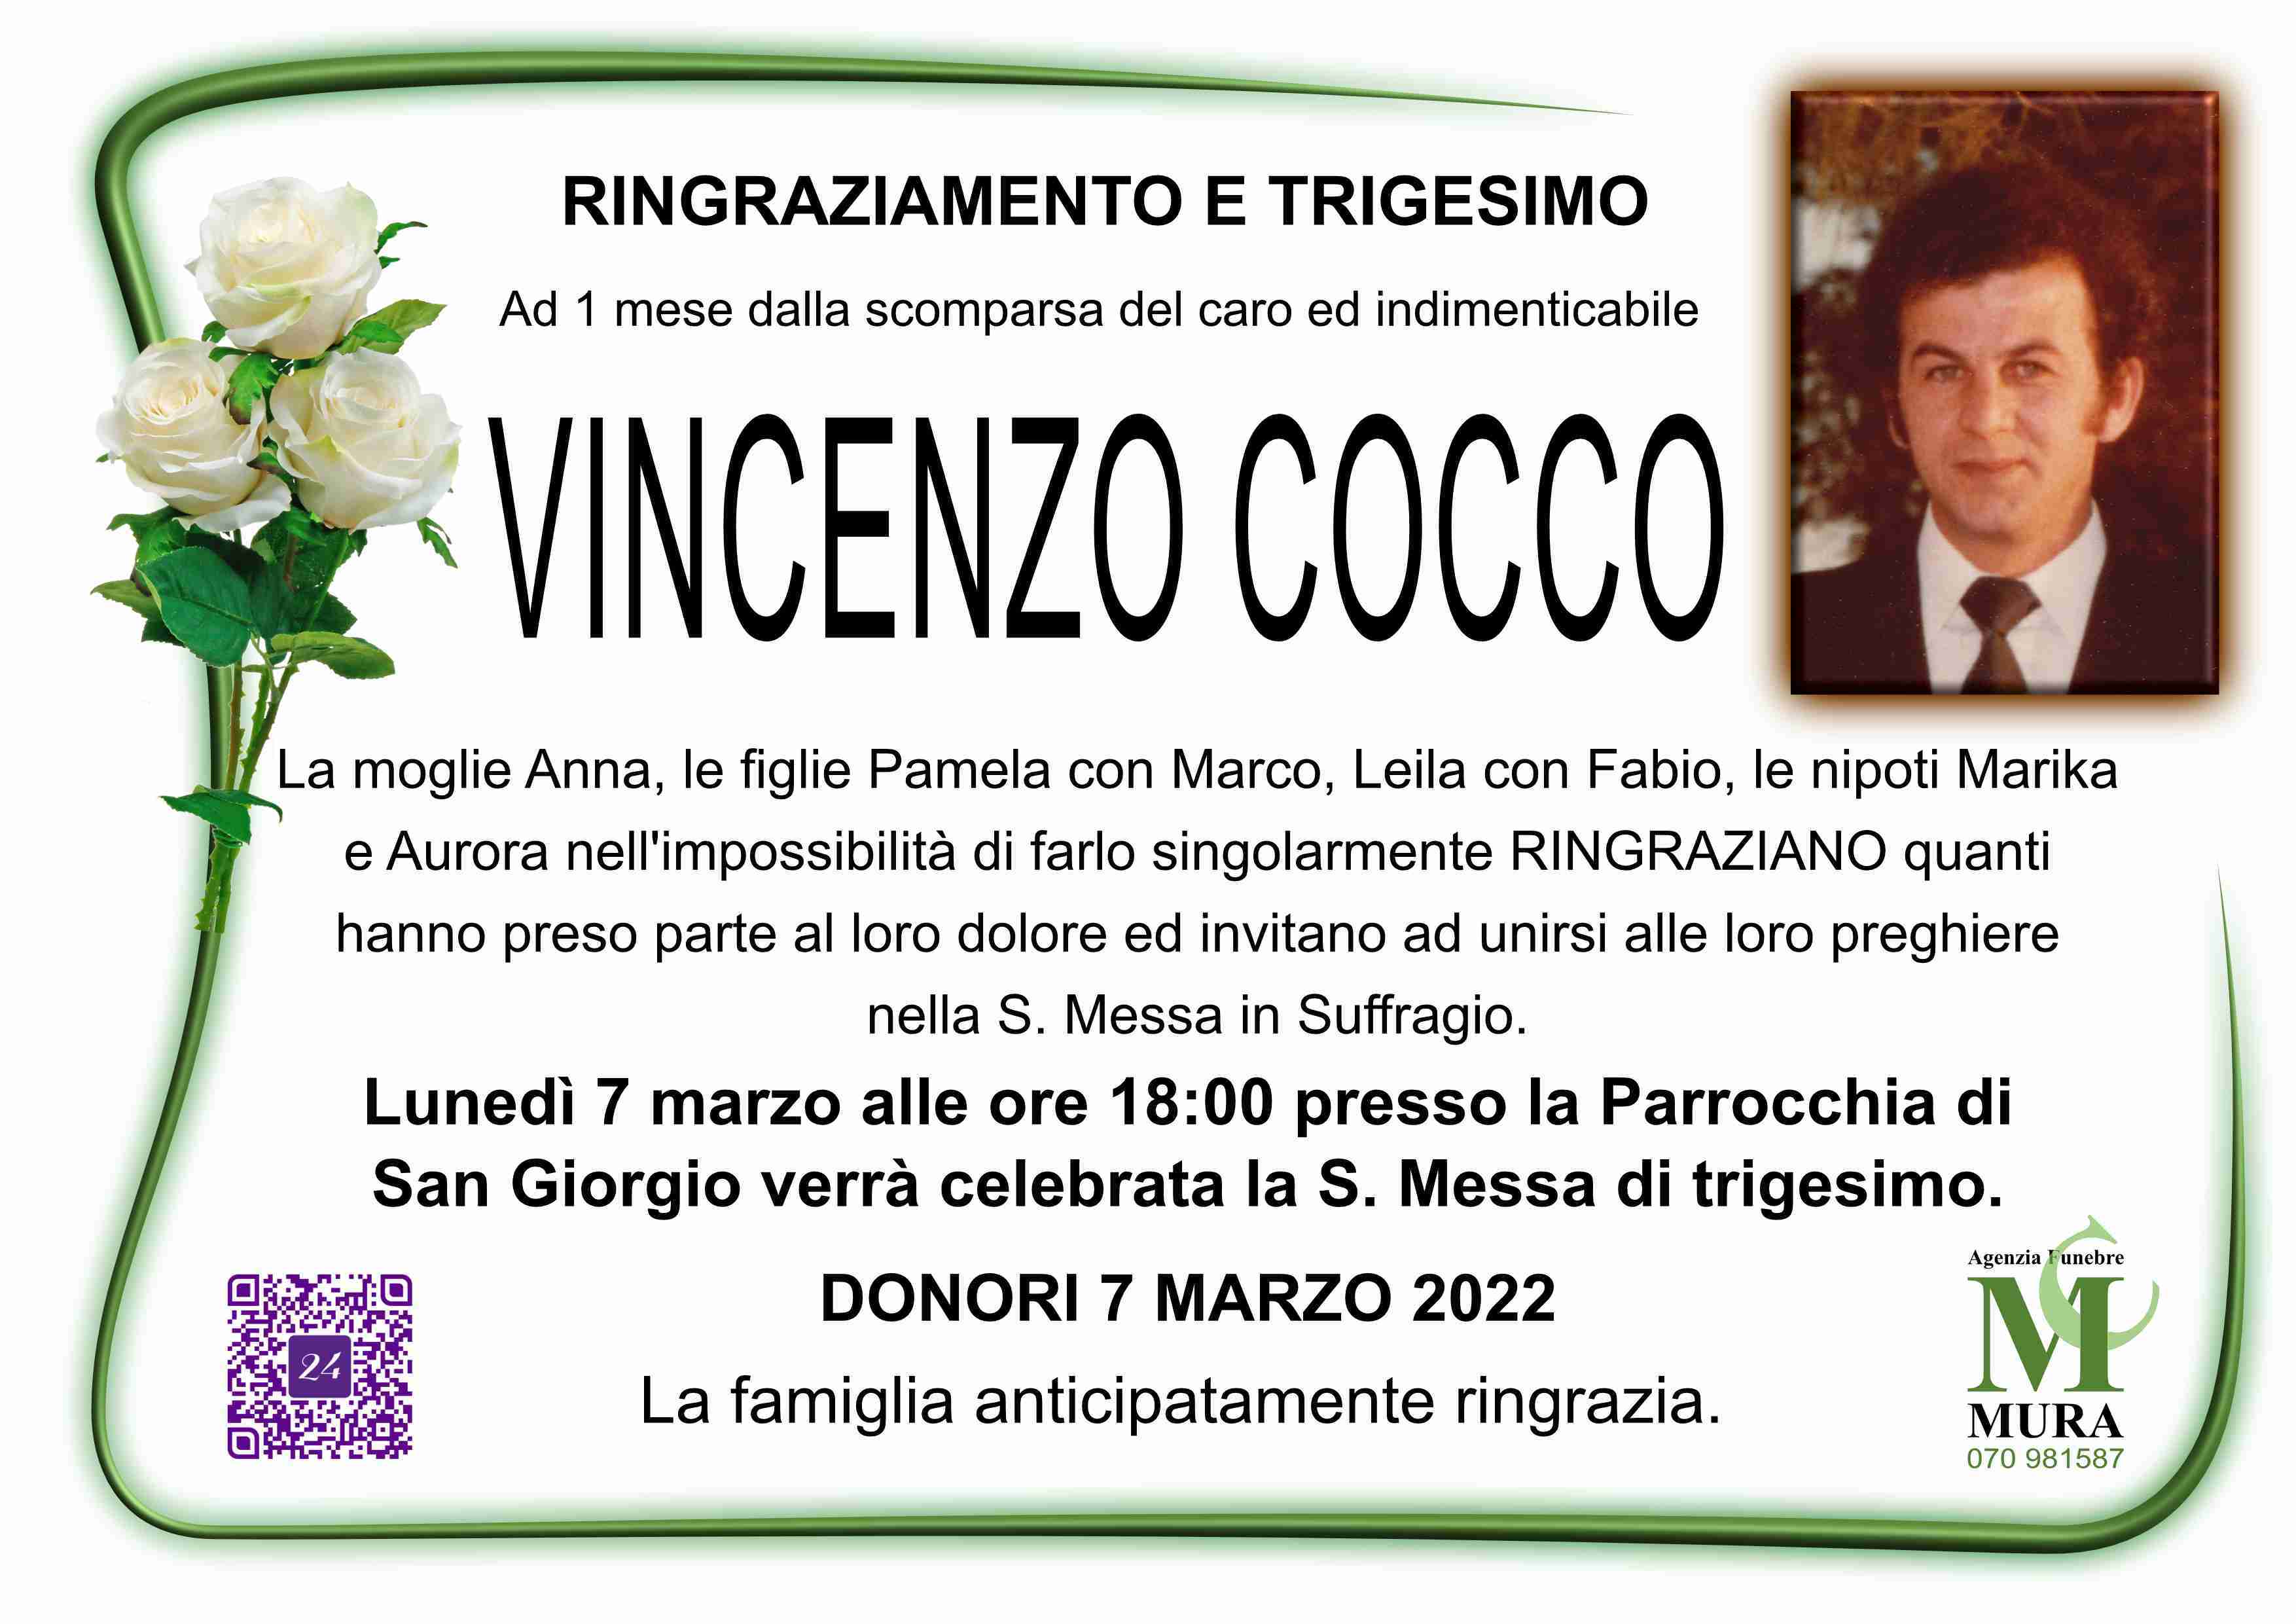 Vincenzo Cocco